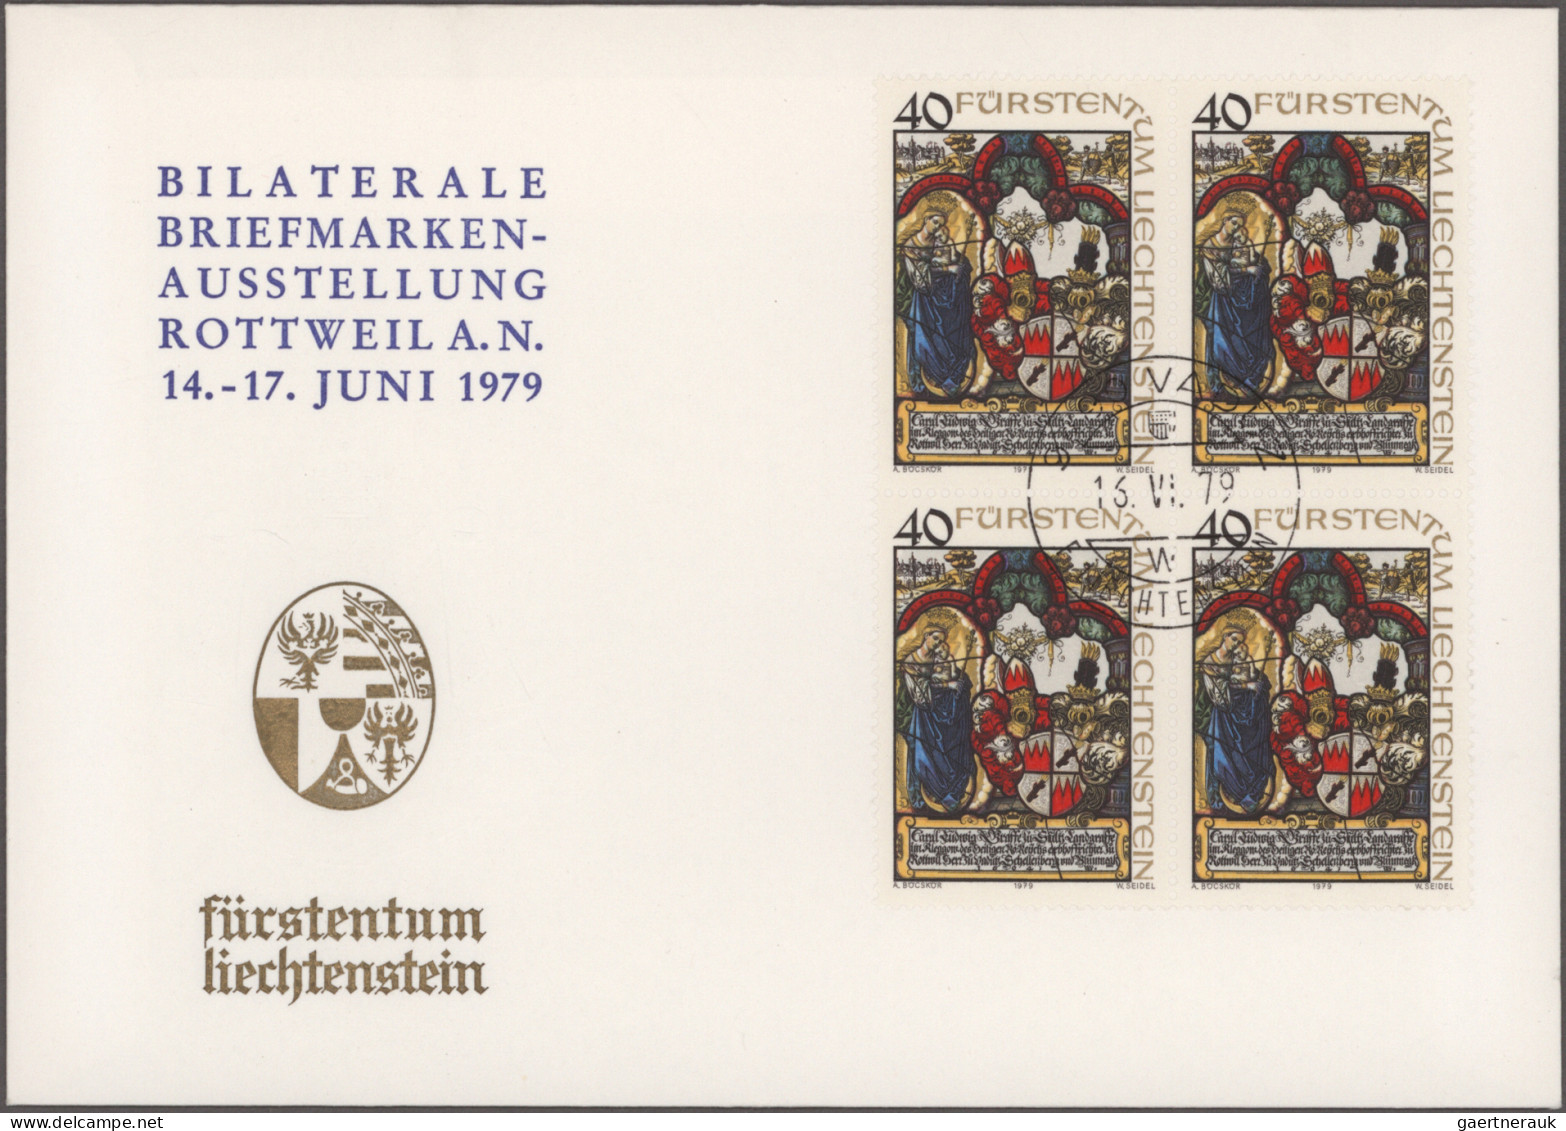 Liechtenstein: 1963/2013, immenser Nachlass-Bestand mit ca. 2400 Belegen mit int